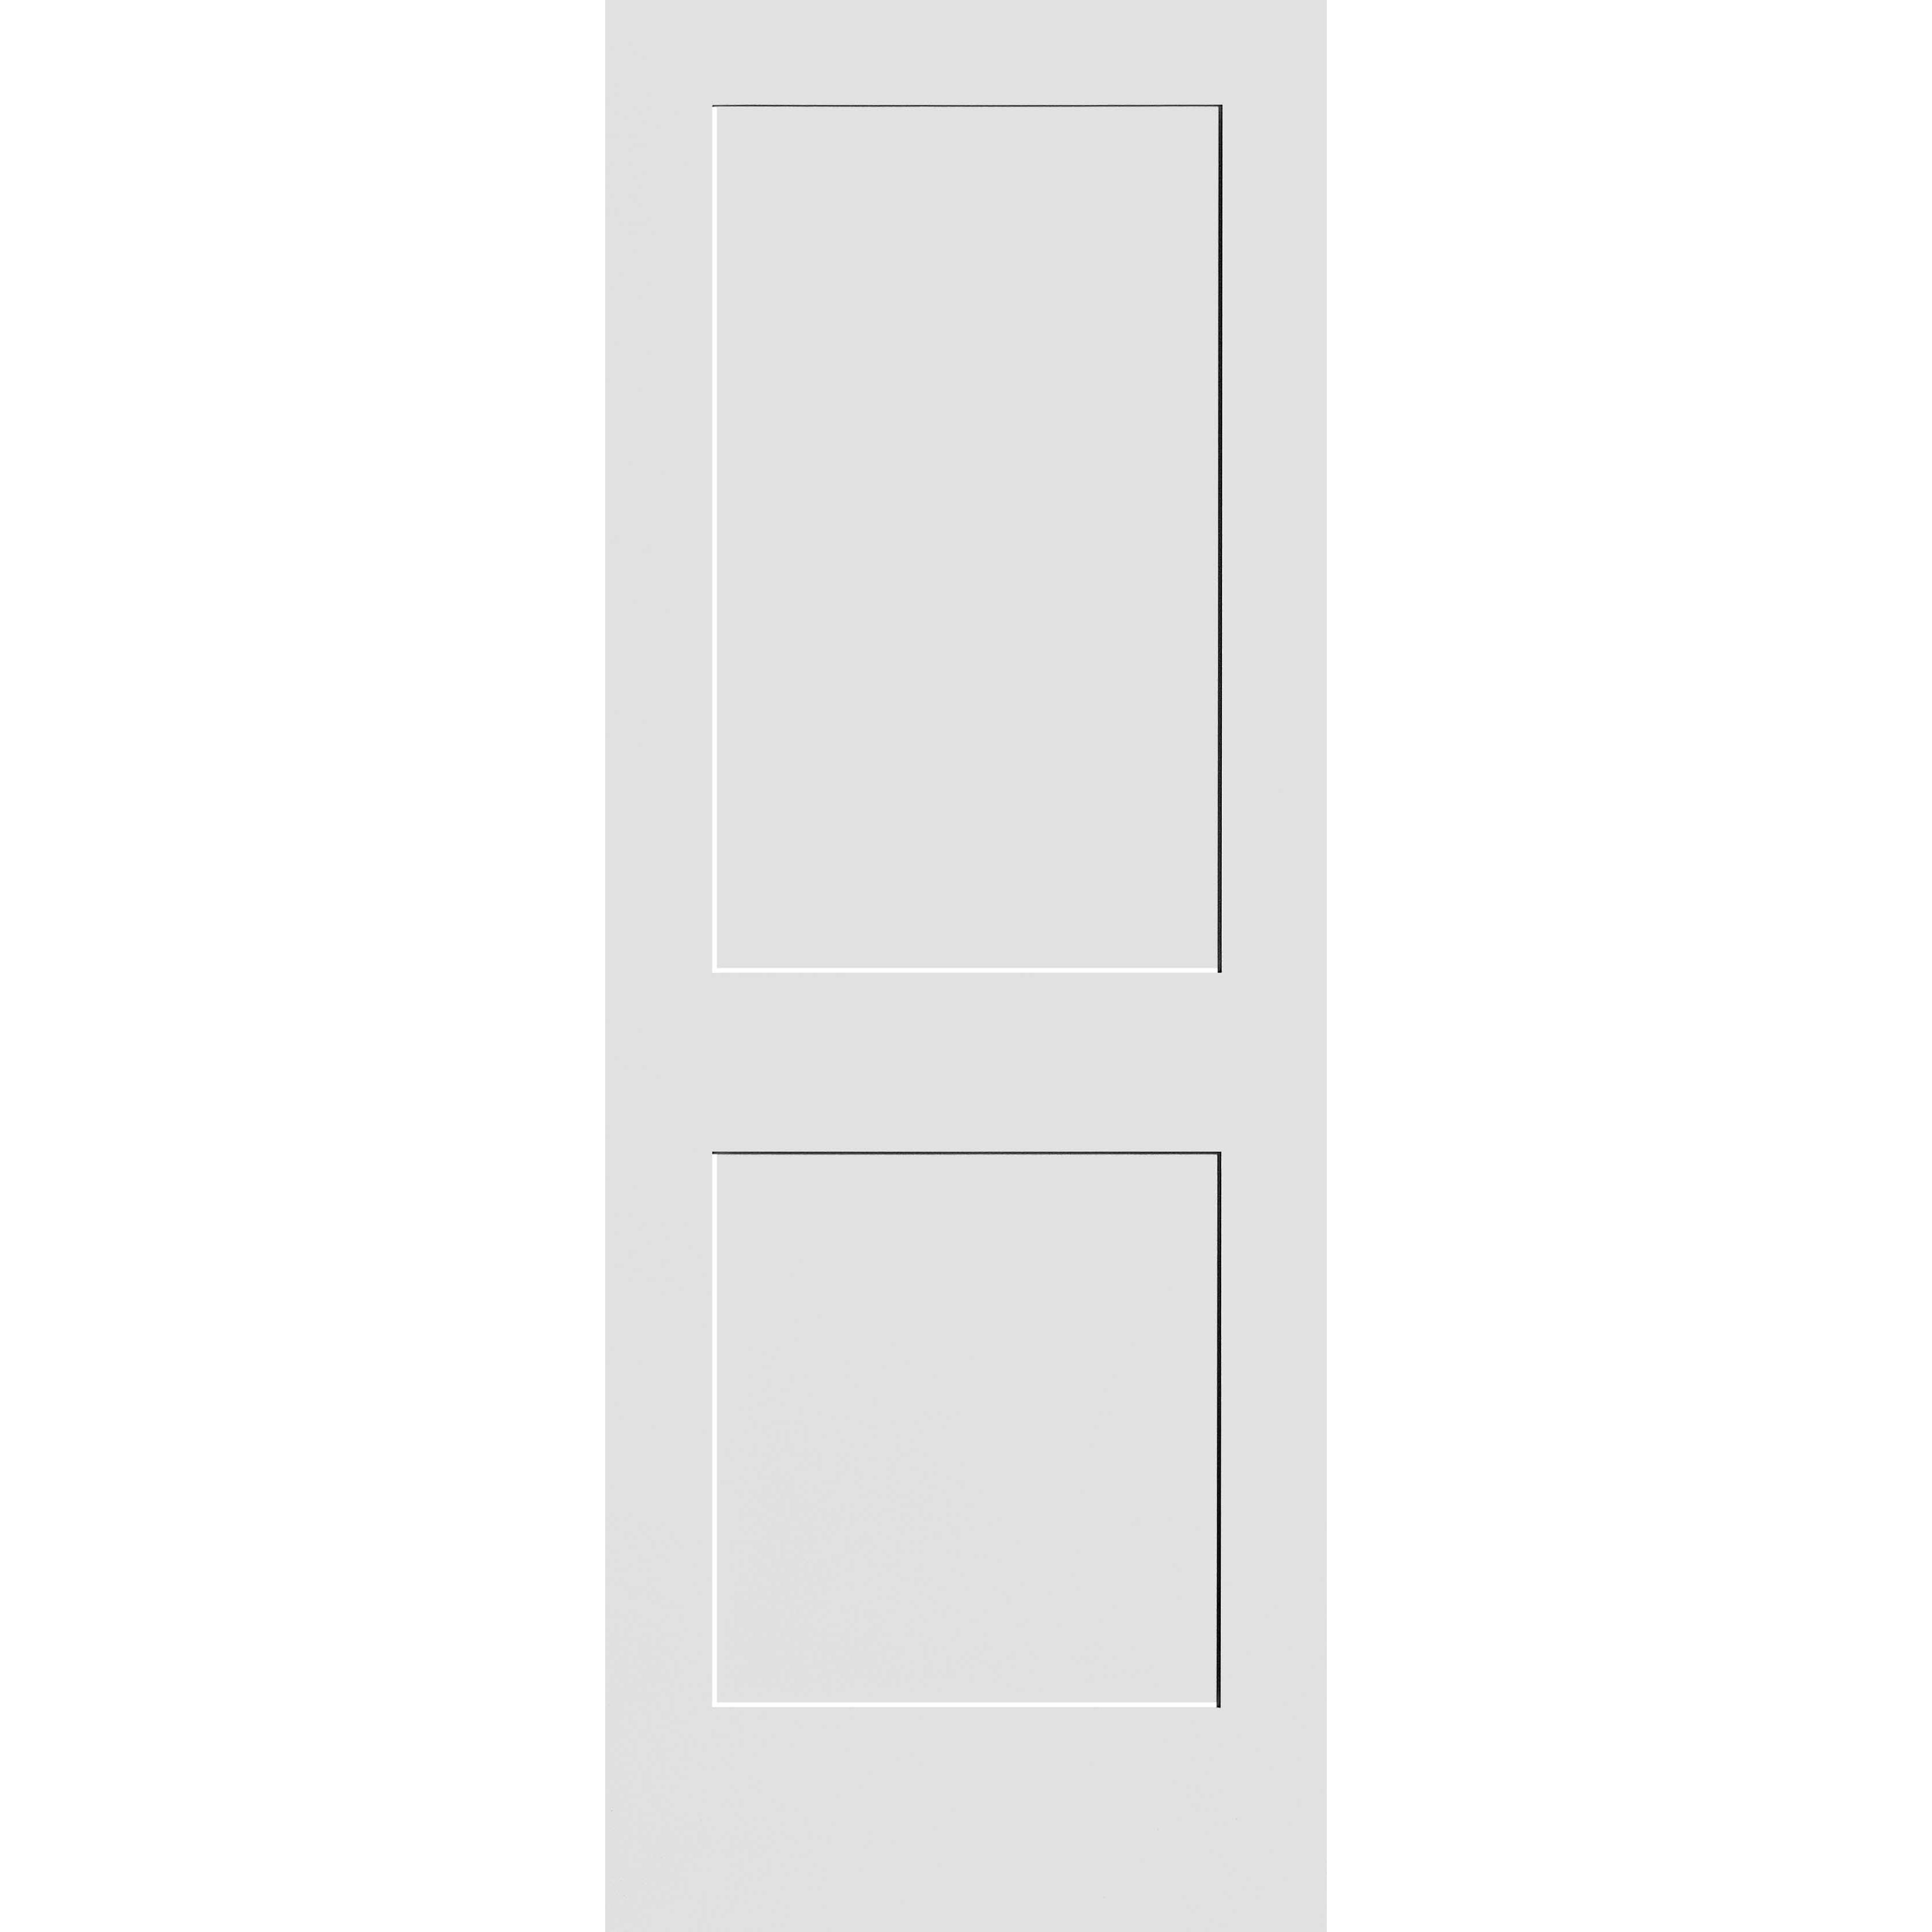 24X80 #8402 MDF PRIMED SHAKER PANEL INTERIOR DOOR